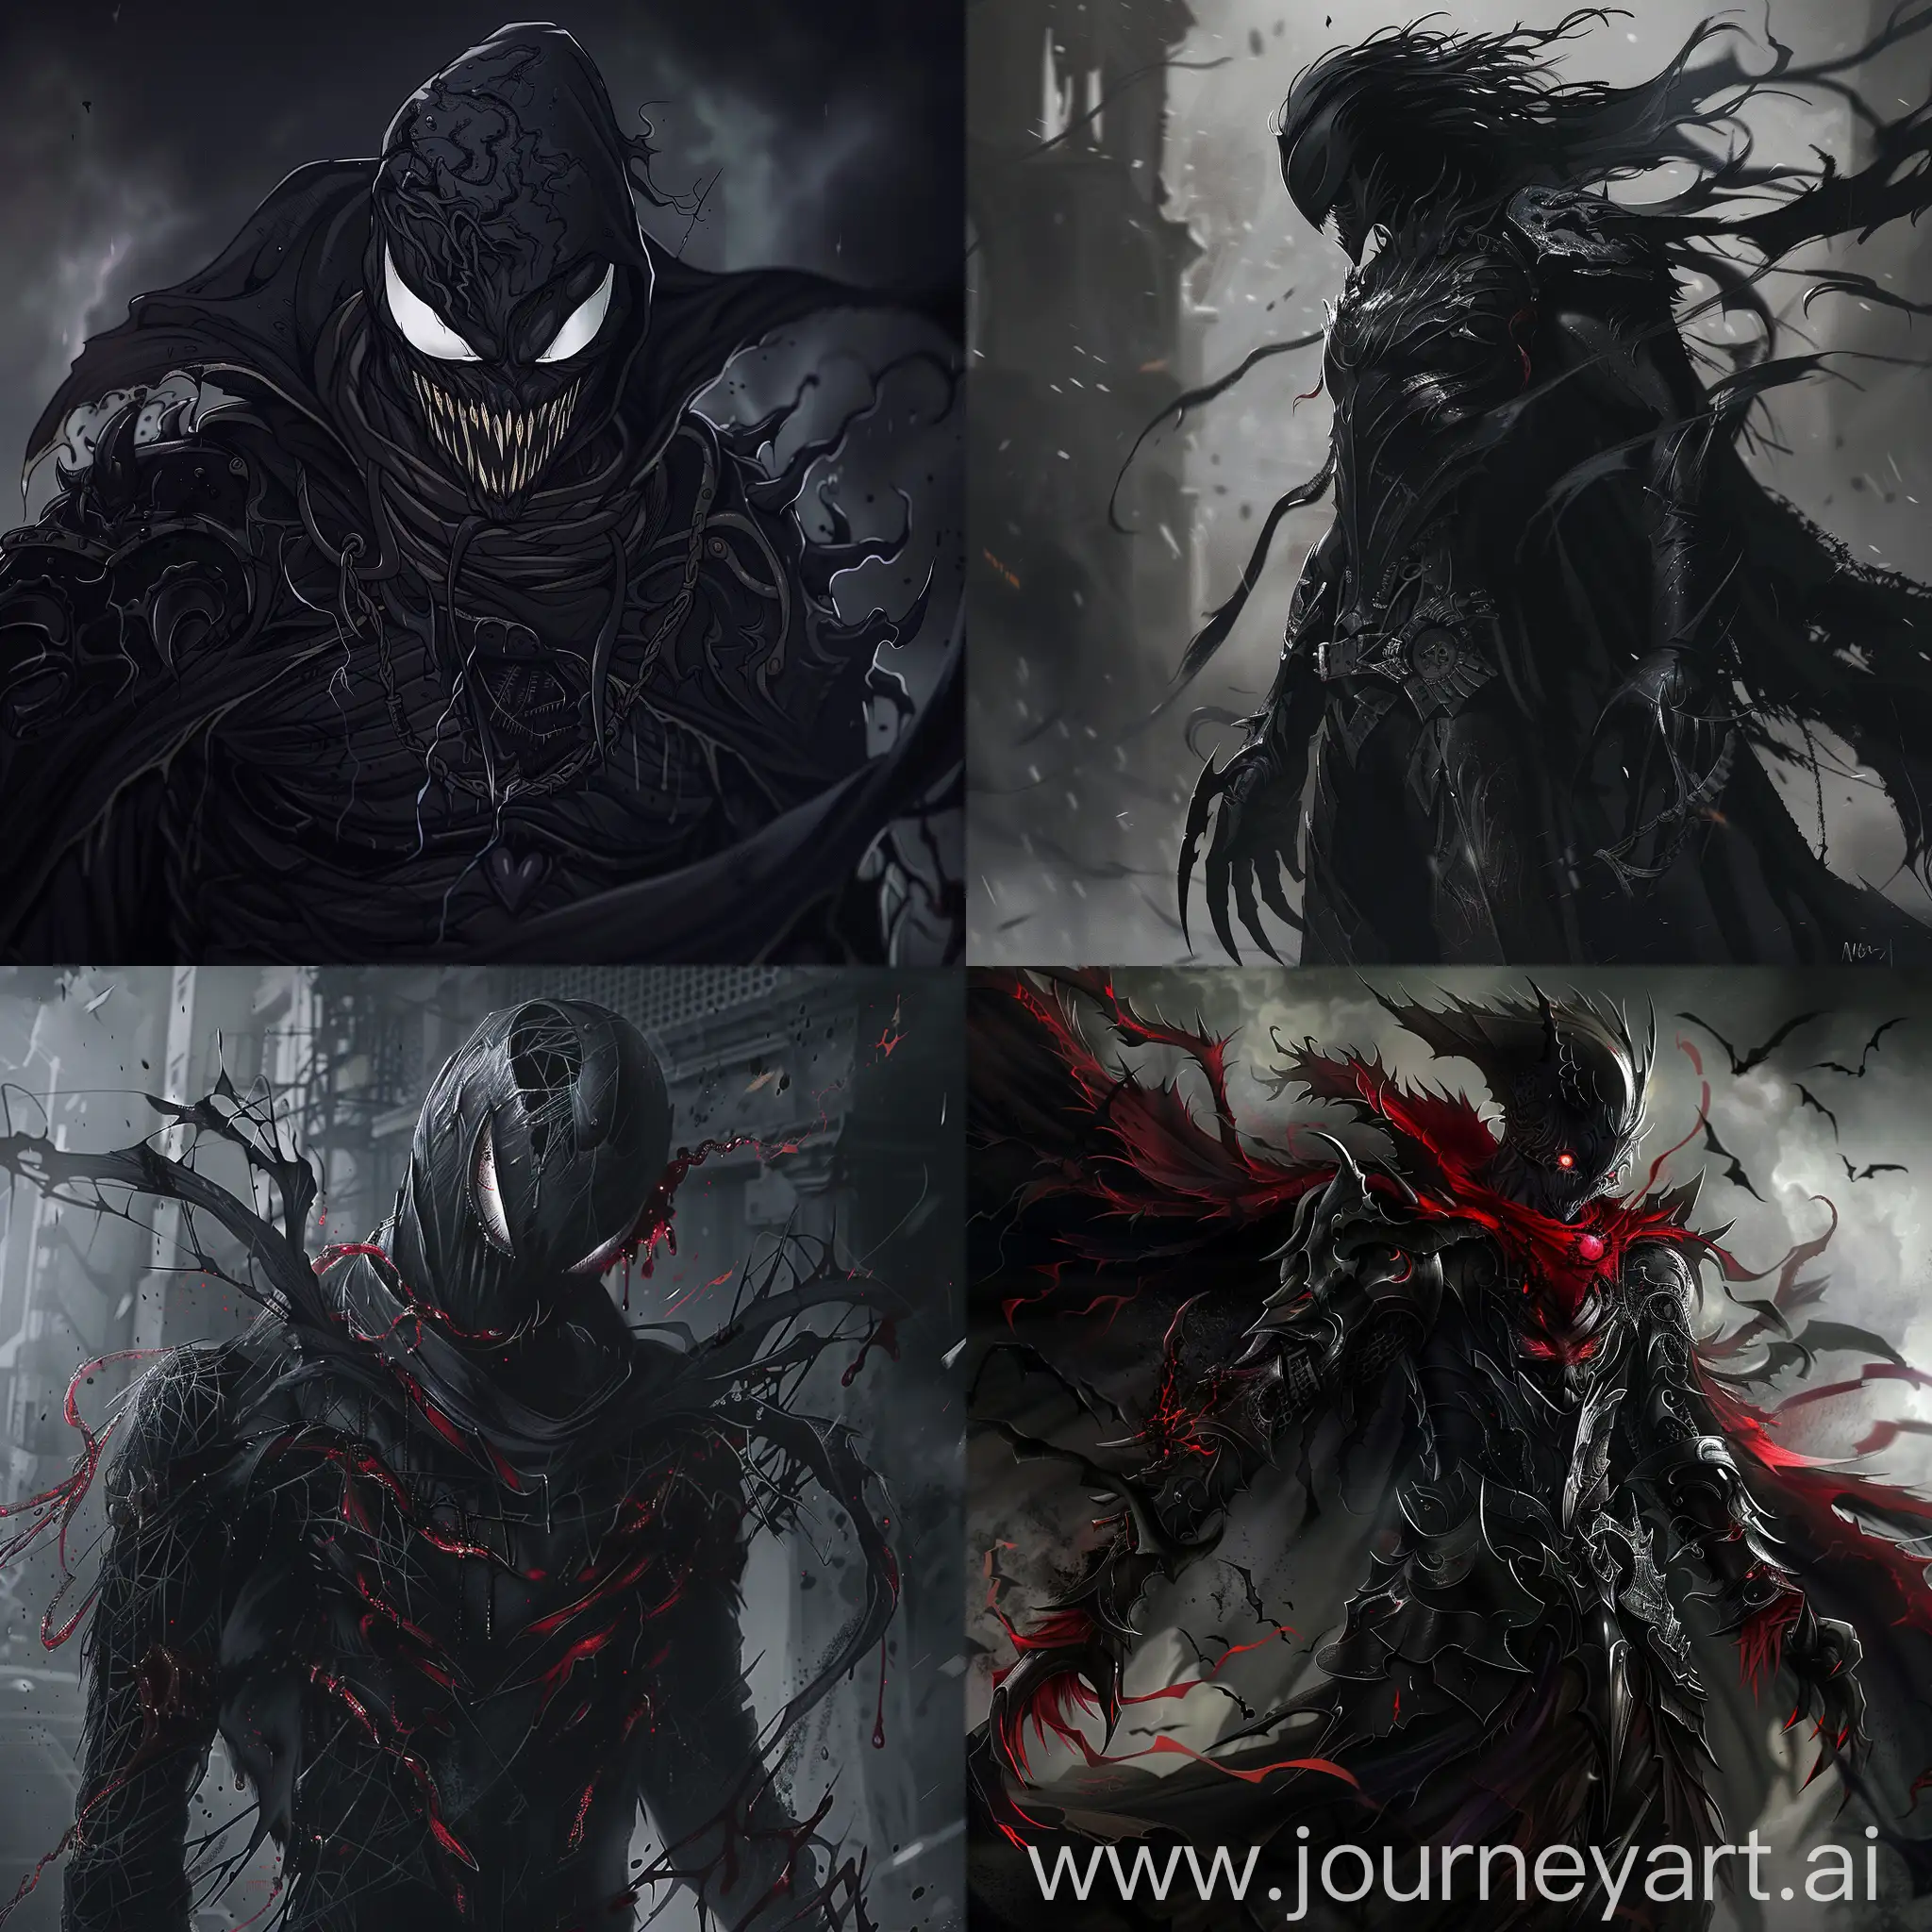 Dark fantasy, gothic horror, anime style, venom vampire knight